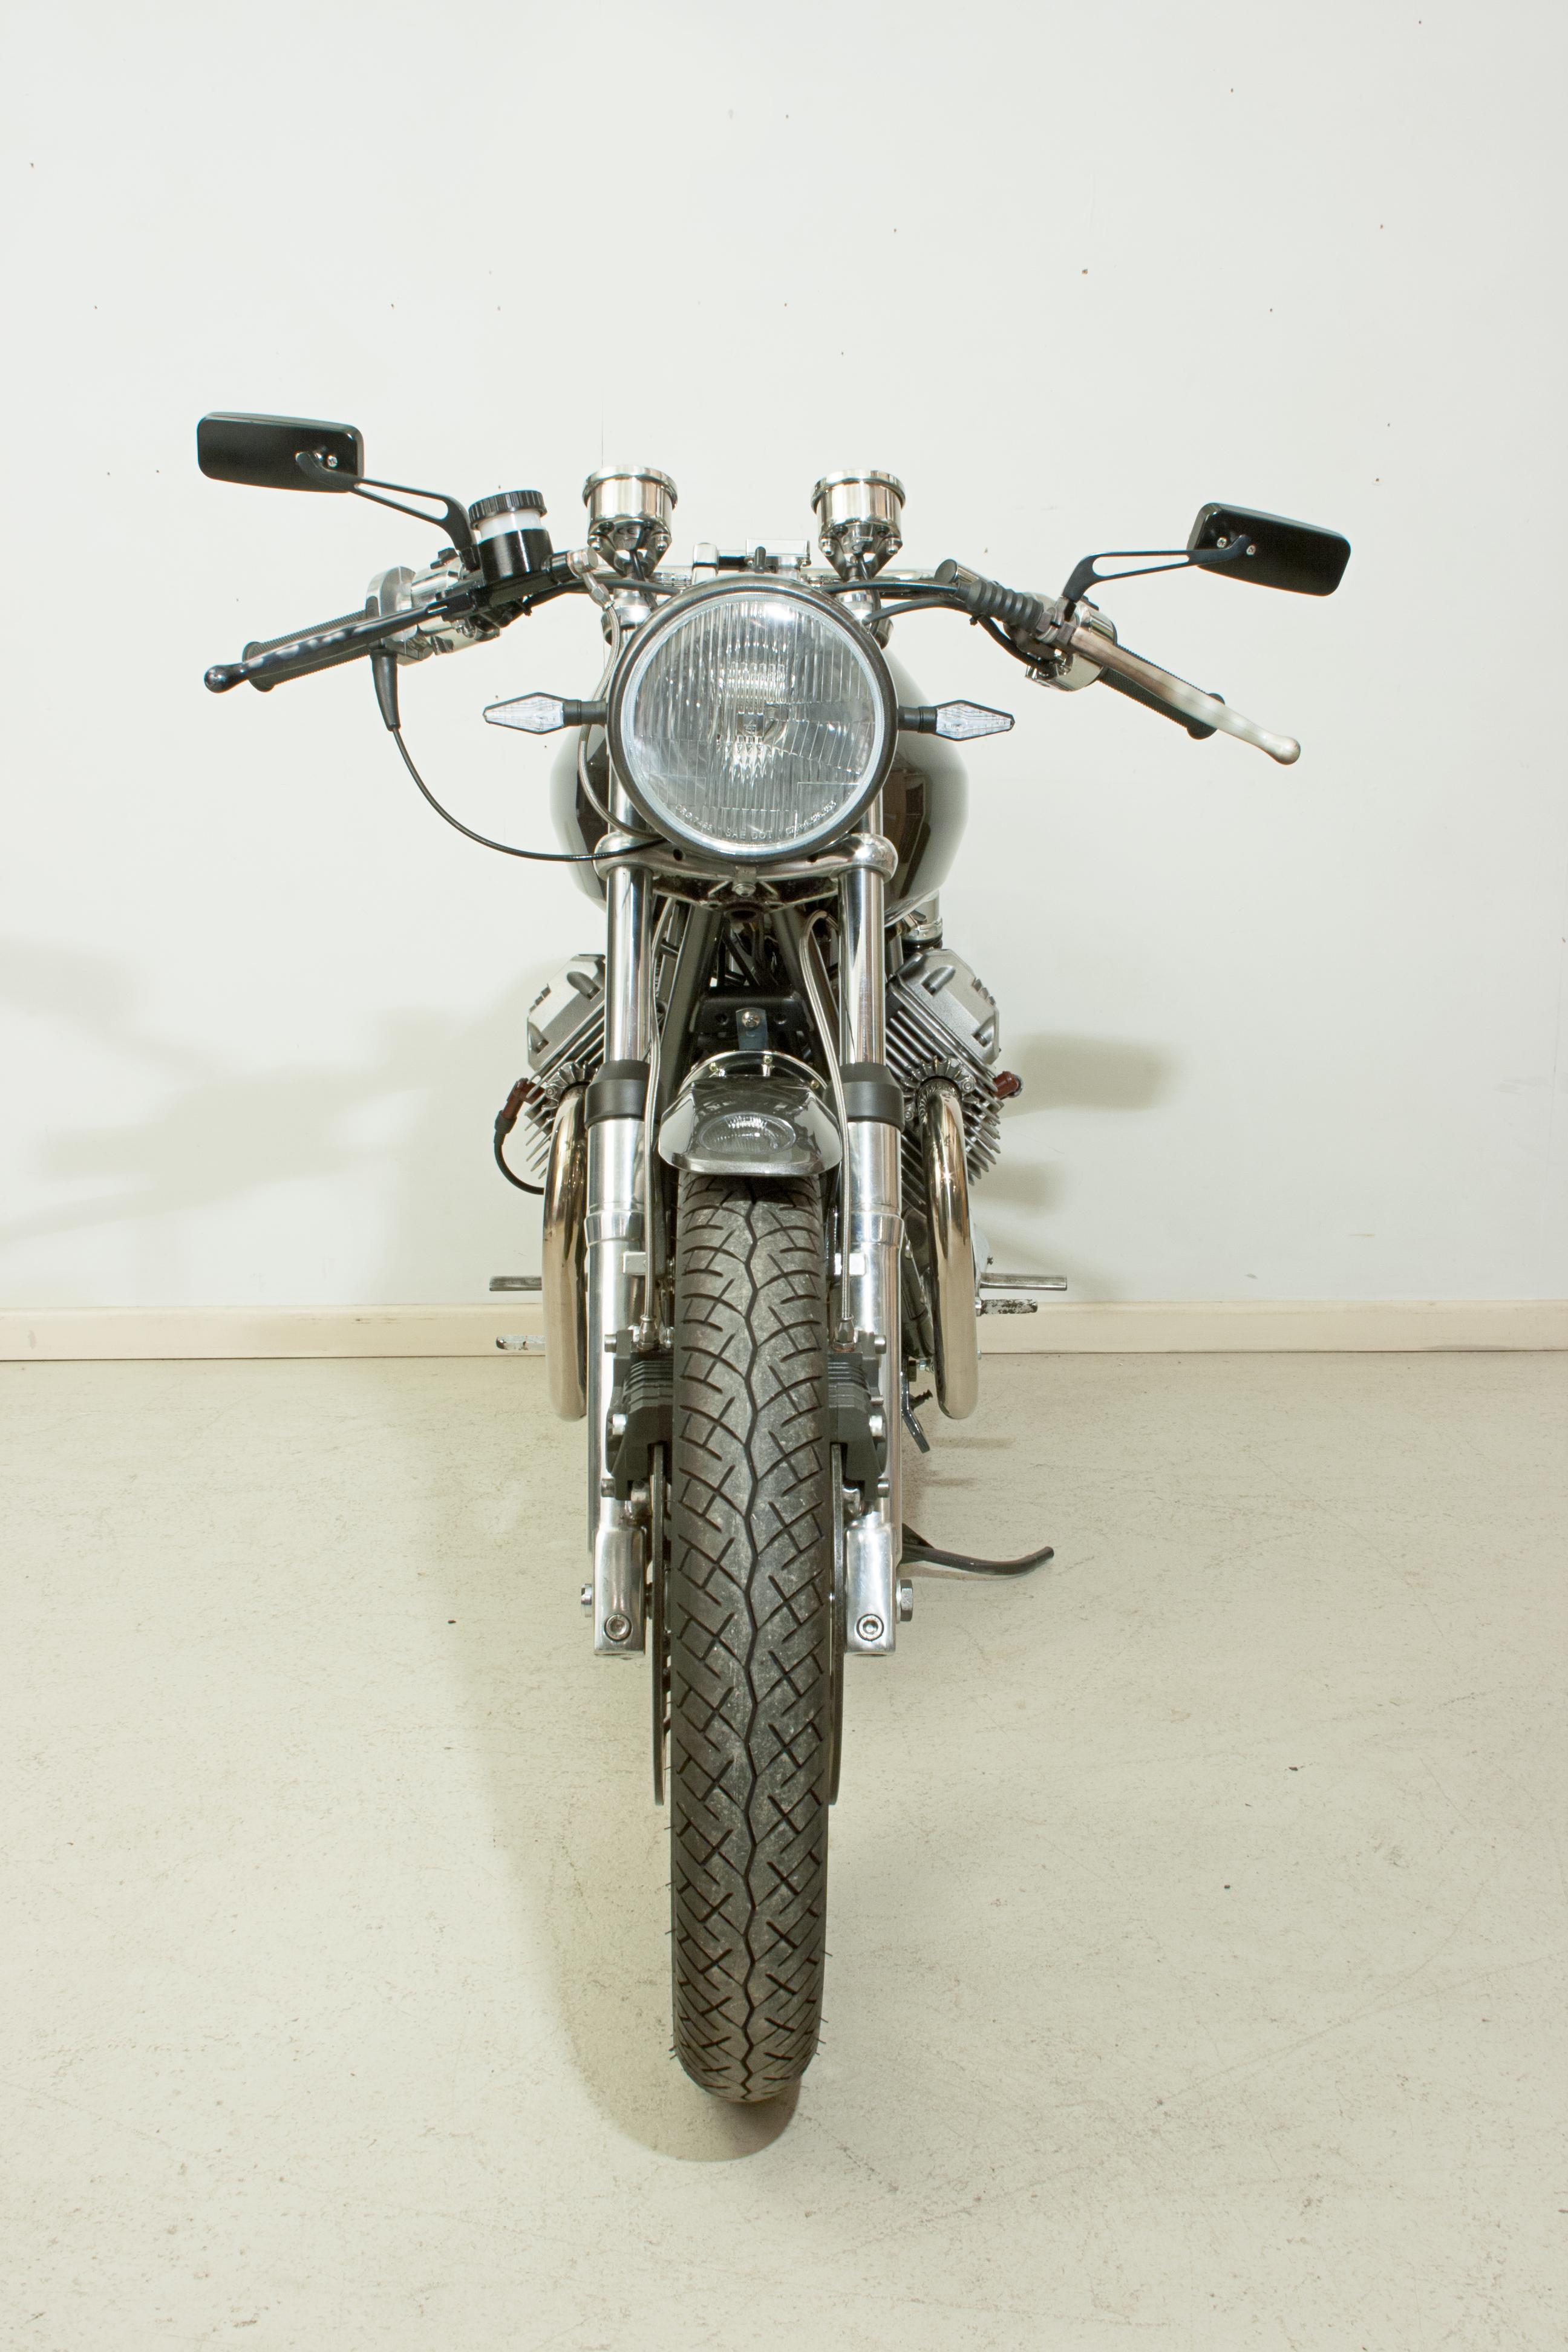 Modern 1982 Moto Guzzi Cafe Racer V50 Italian Motorcycle For Sale